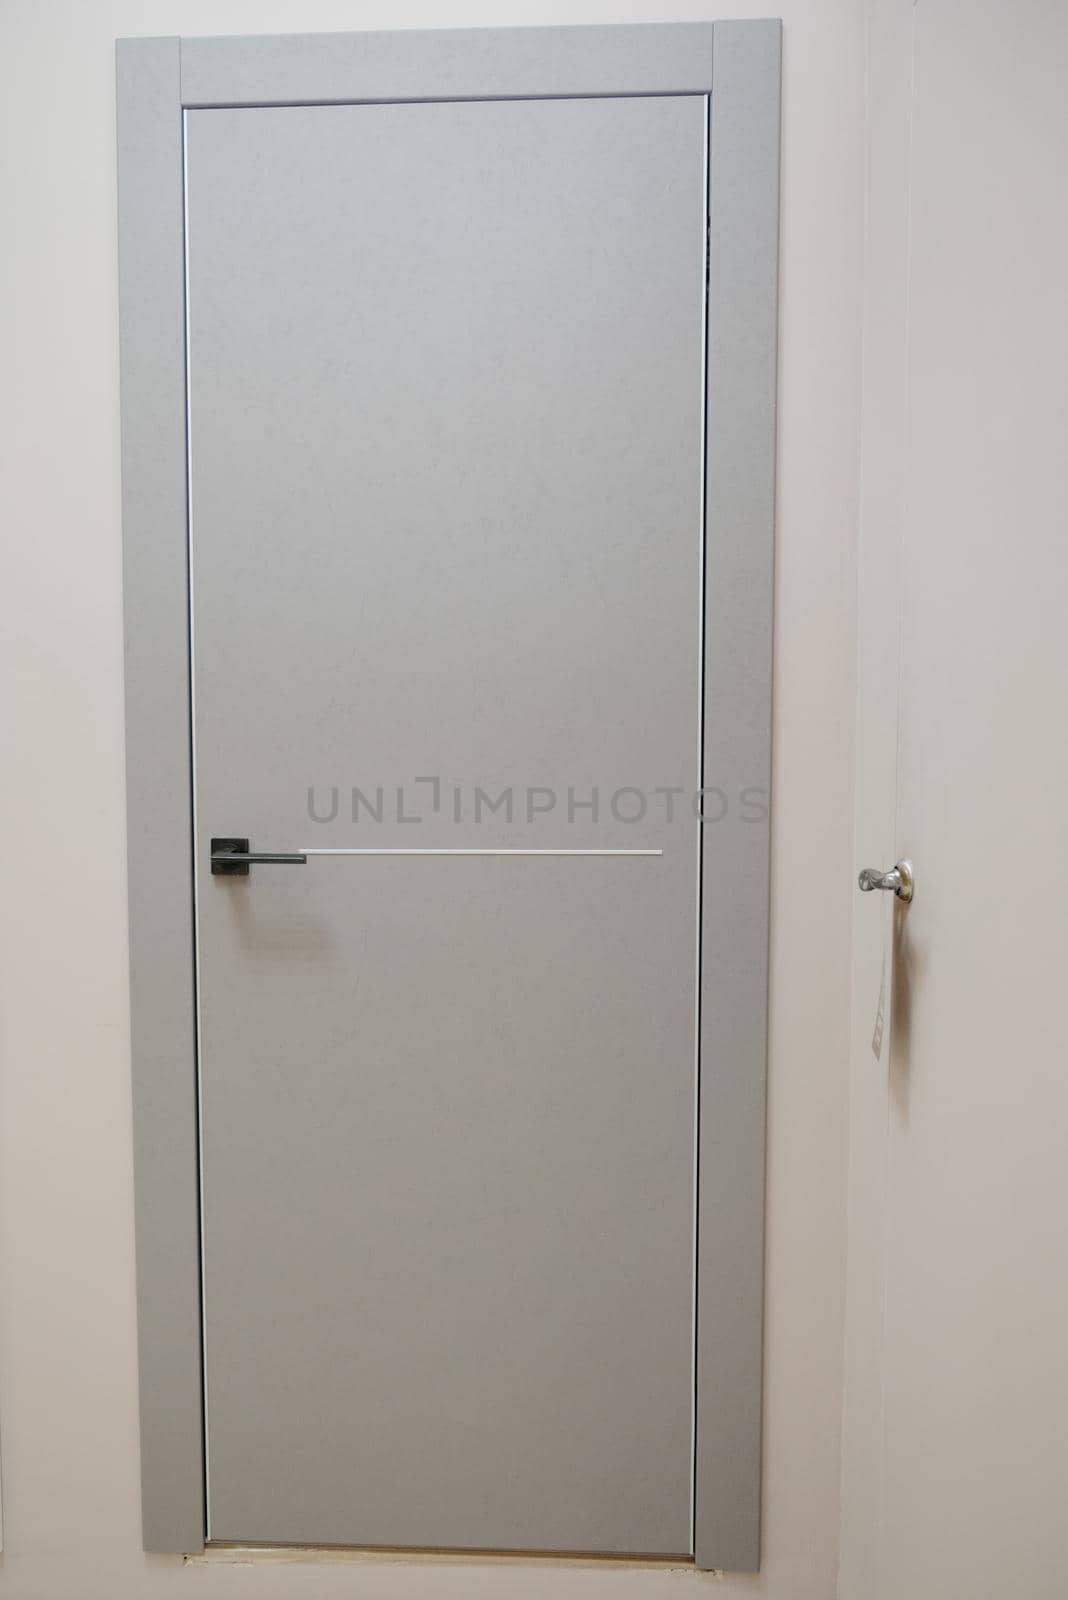 Modern wooden gray door with metal door handle.Stainless steel door handle.Interior design concept.Entrance door